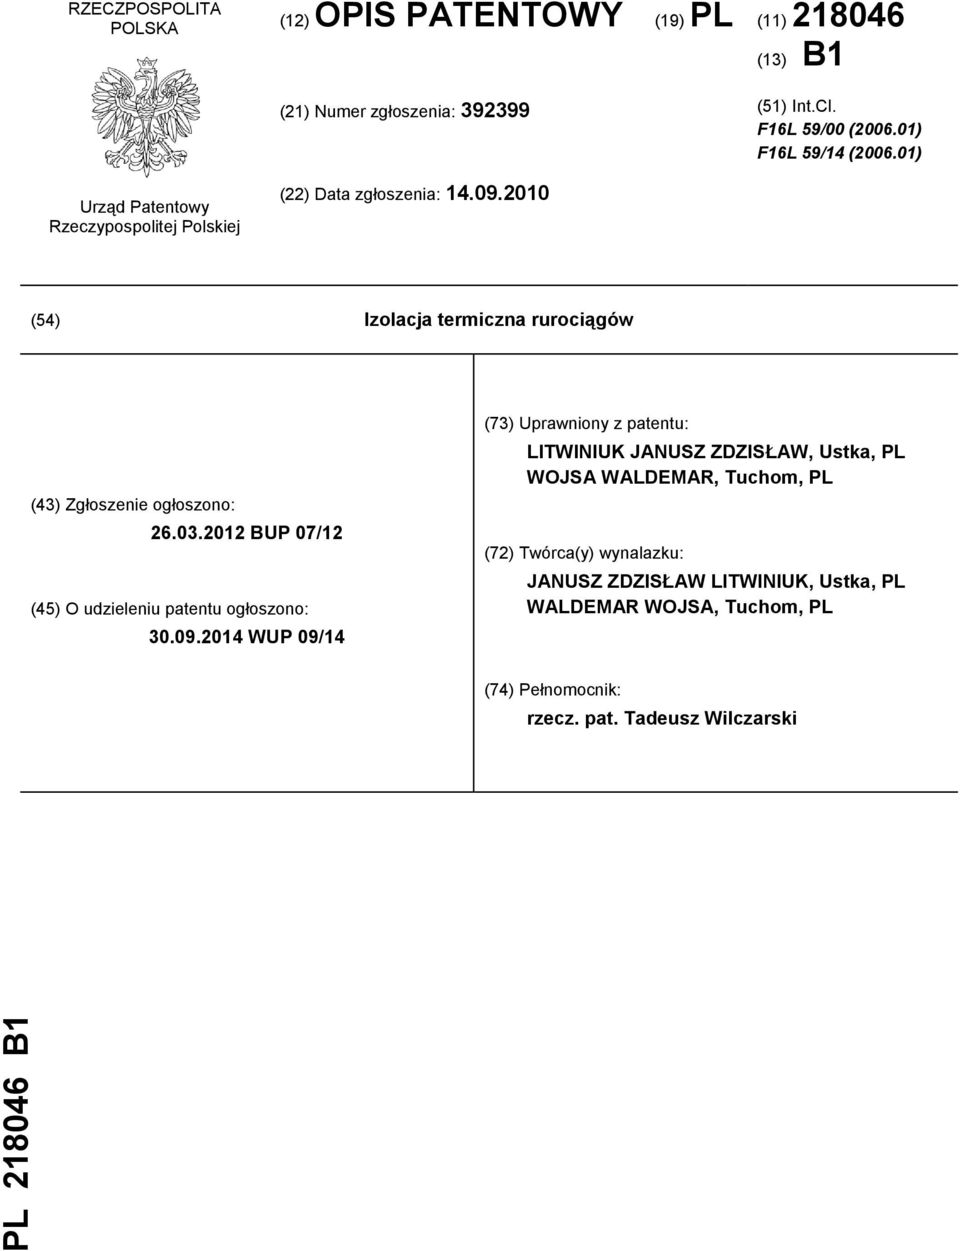 2010 (54) Izolacja termiczna rurociągów (43) Zgłoszenie ogłoszono: 26.03.2012 BUP 07/12 (45) O udzieleniu patentu ogłoszono: 30.09.